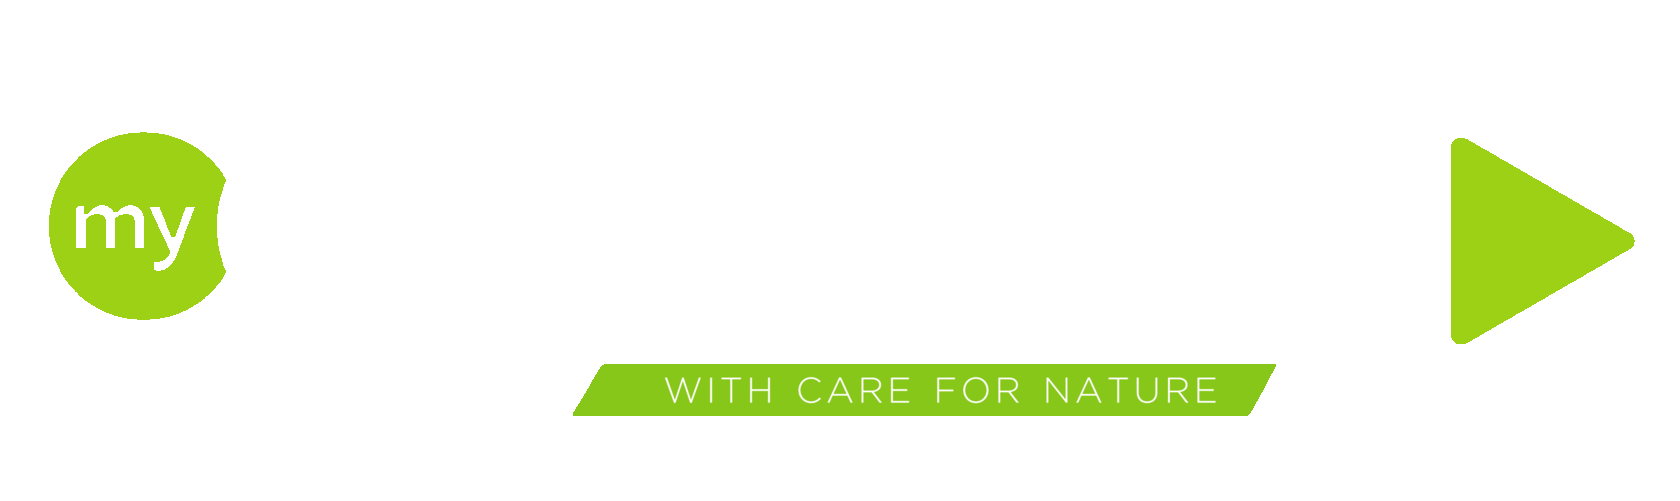 Гринвей глобал ком. Гринвей лого. Greenway новый логотип. Greenway на прозрачном фоне. My Greenway логотип вектор.